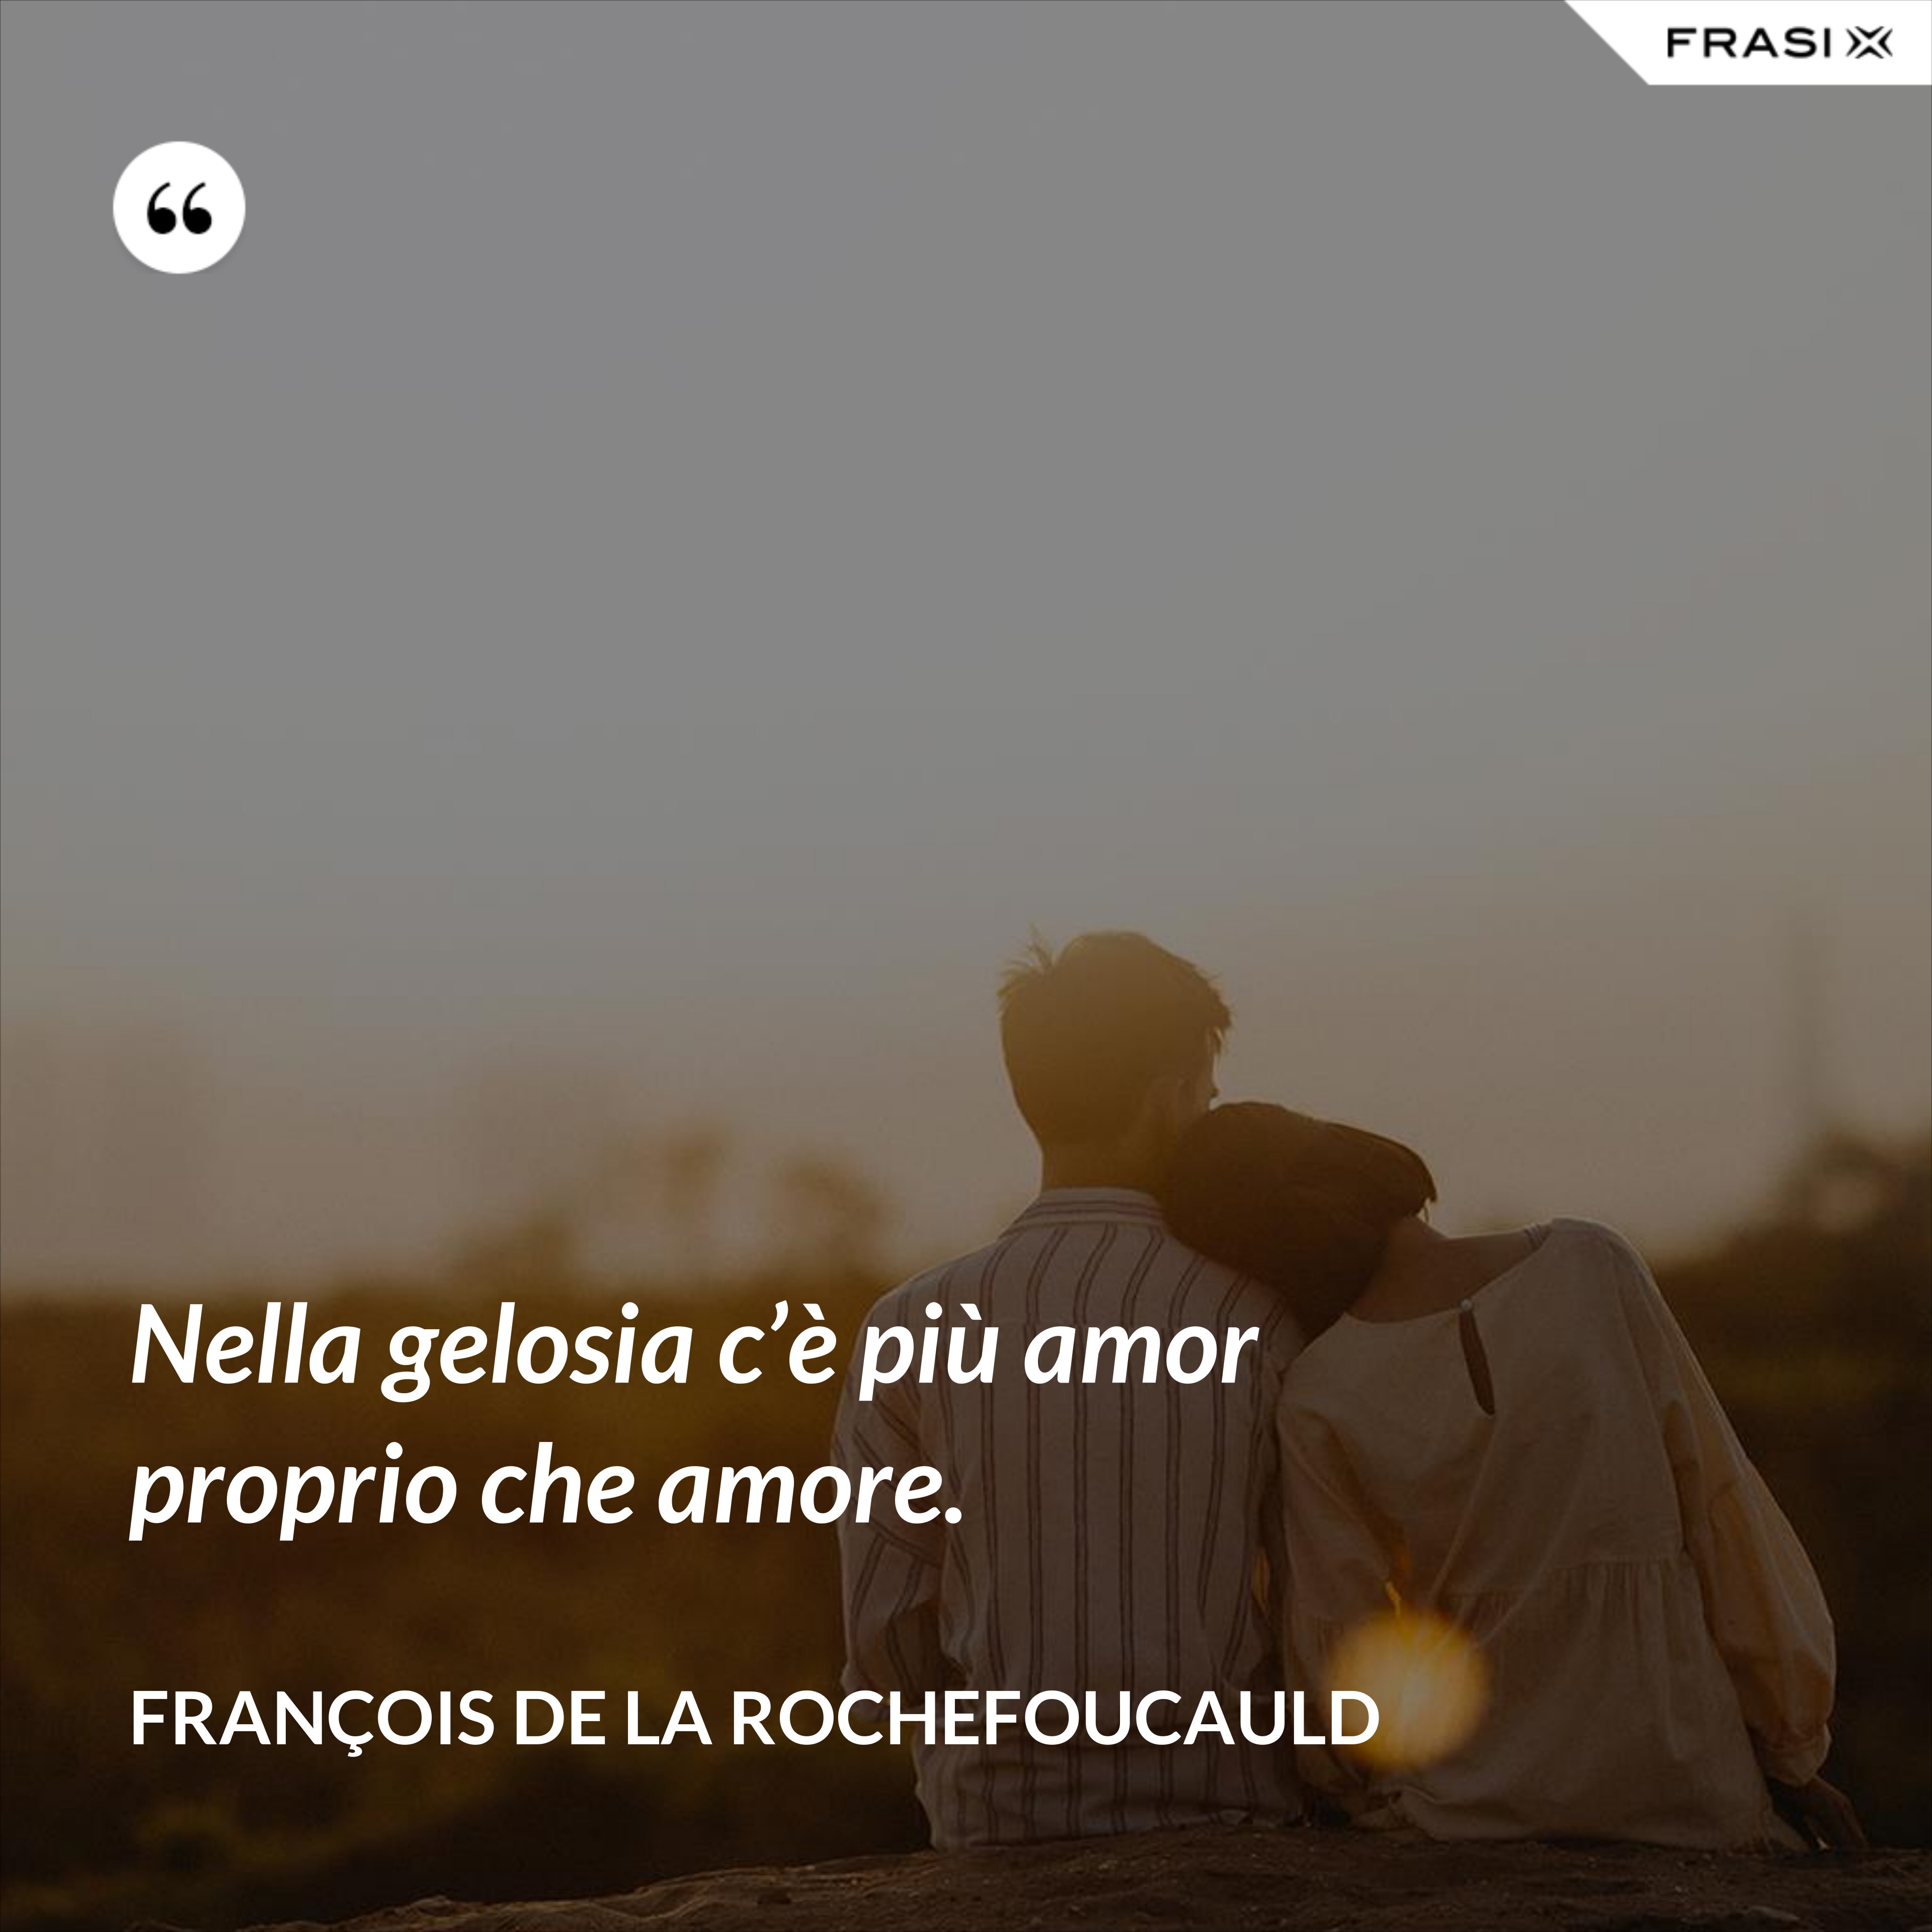 Nella gelosia c’è più amor proprio che amore. - François de La Rochefoucauld